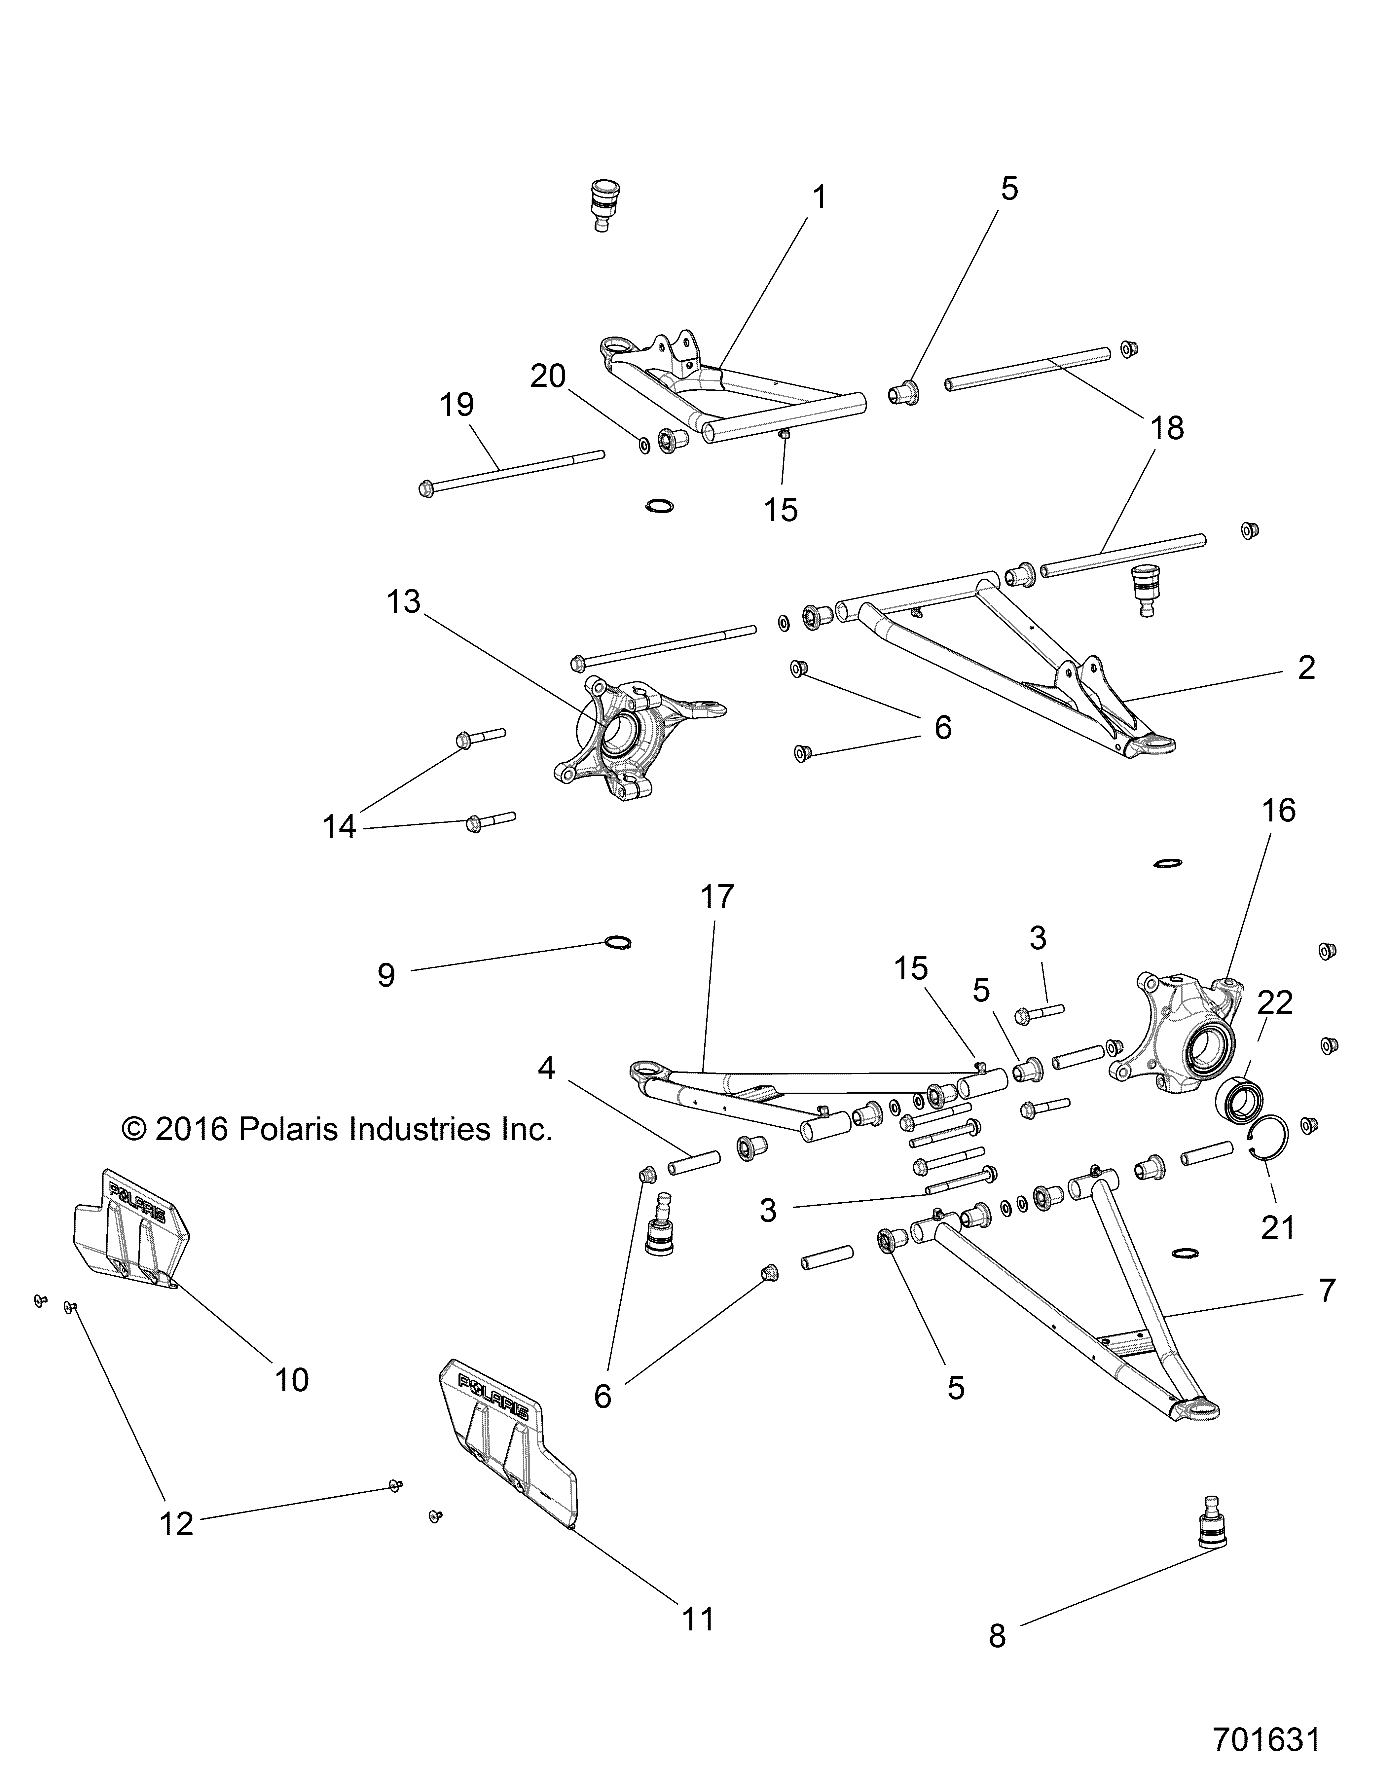 Foto diagrama Polaris que contem a peça 1019668-689